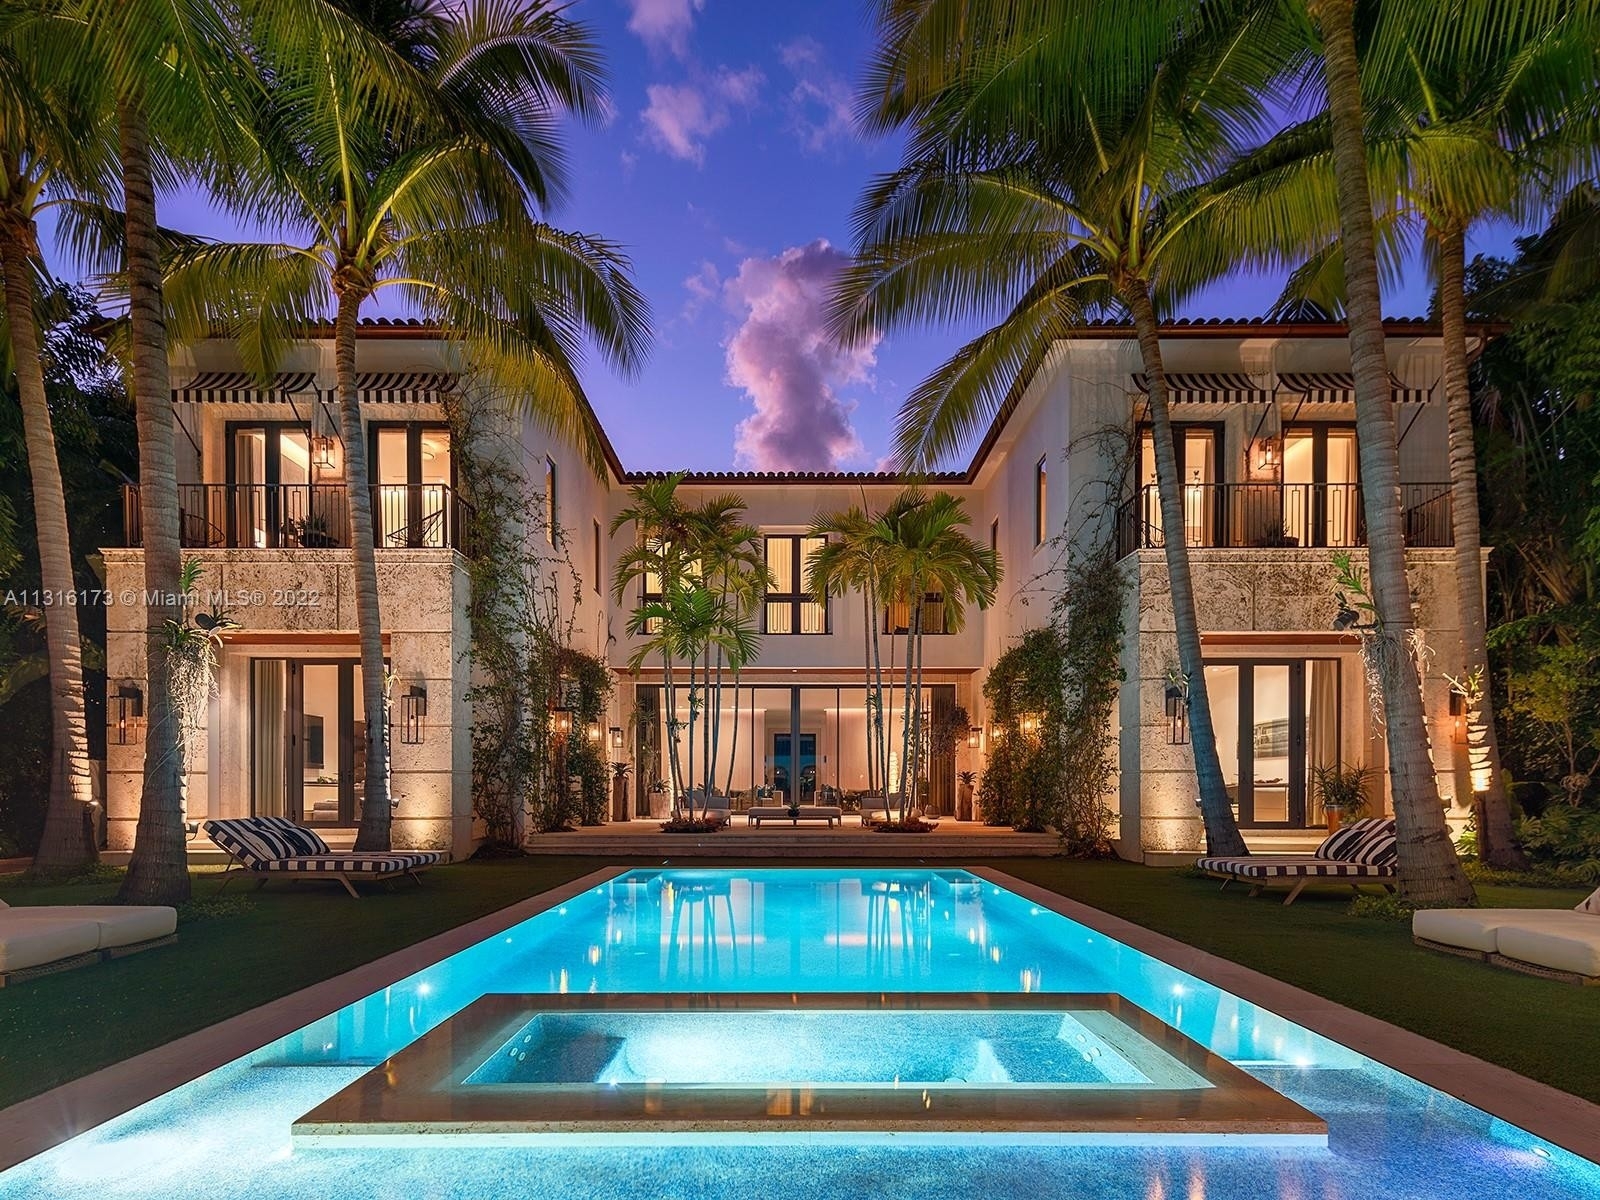 Single Family Home for Sale at Bayshore, Miami Beach, FL 33140